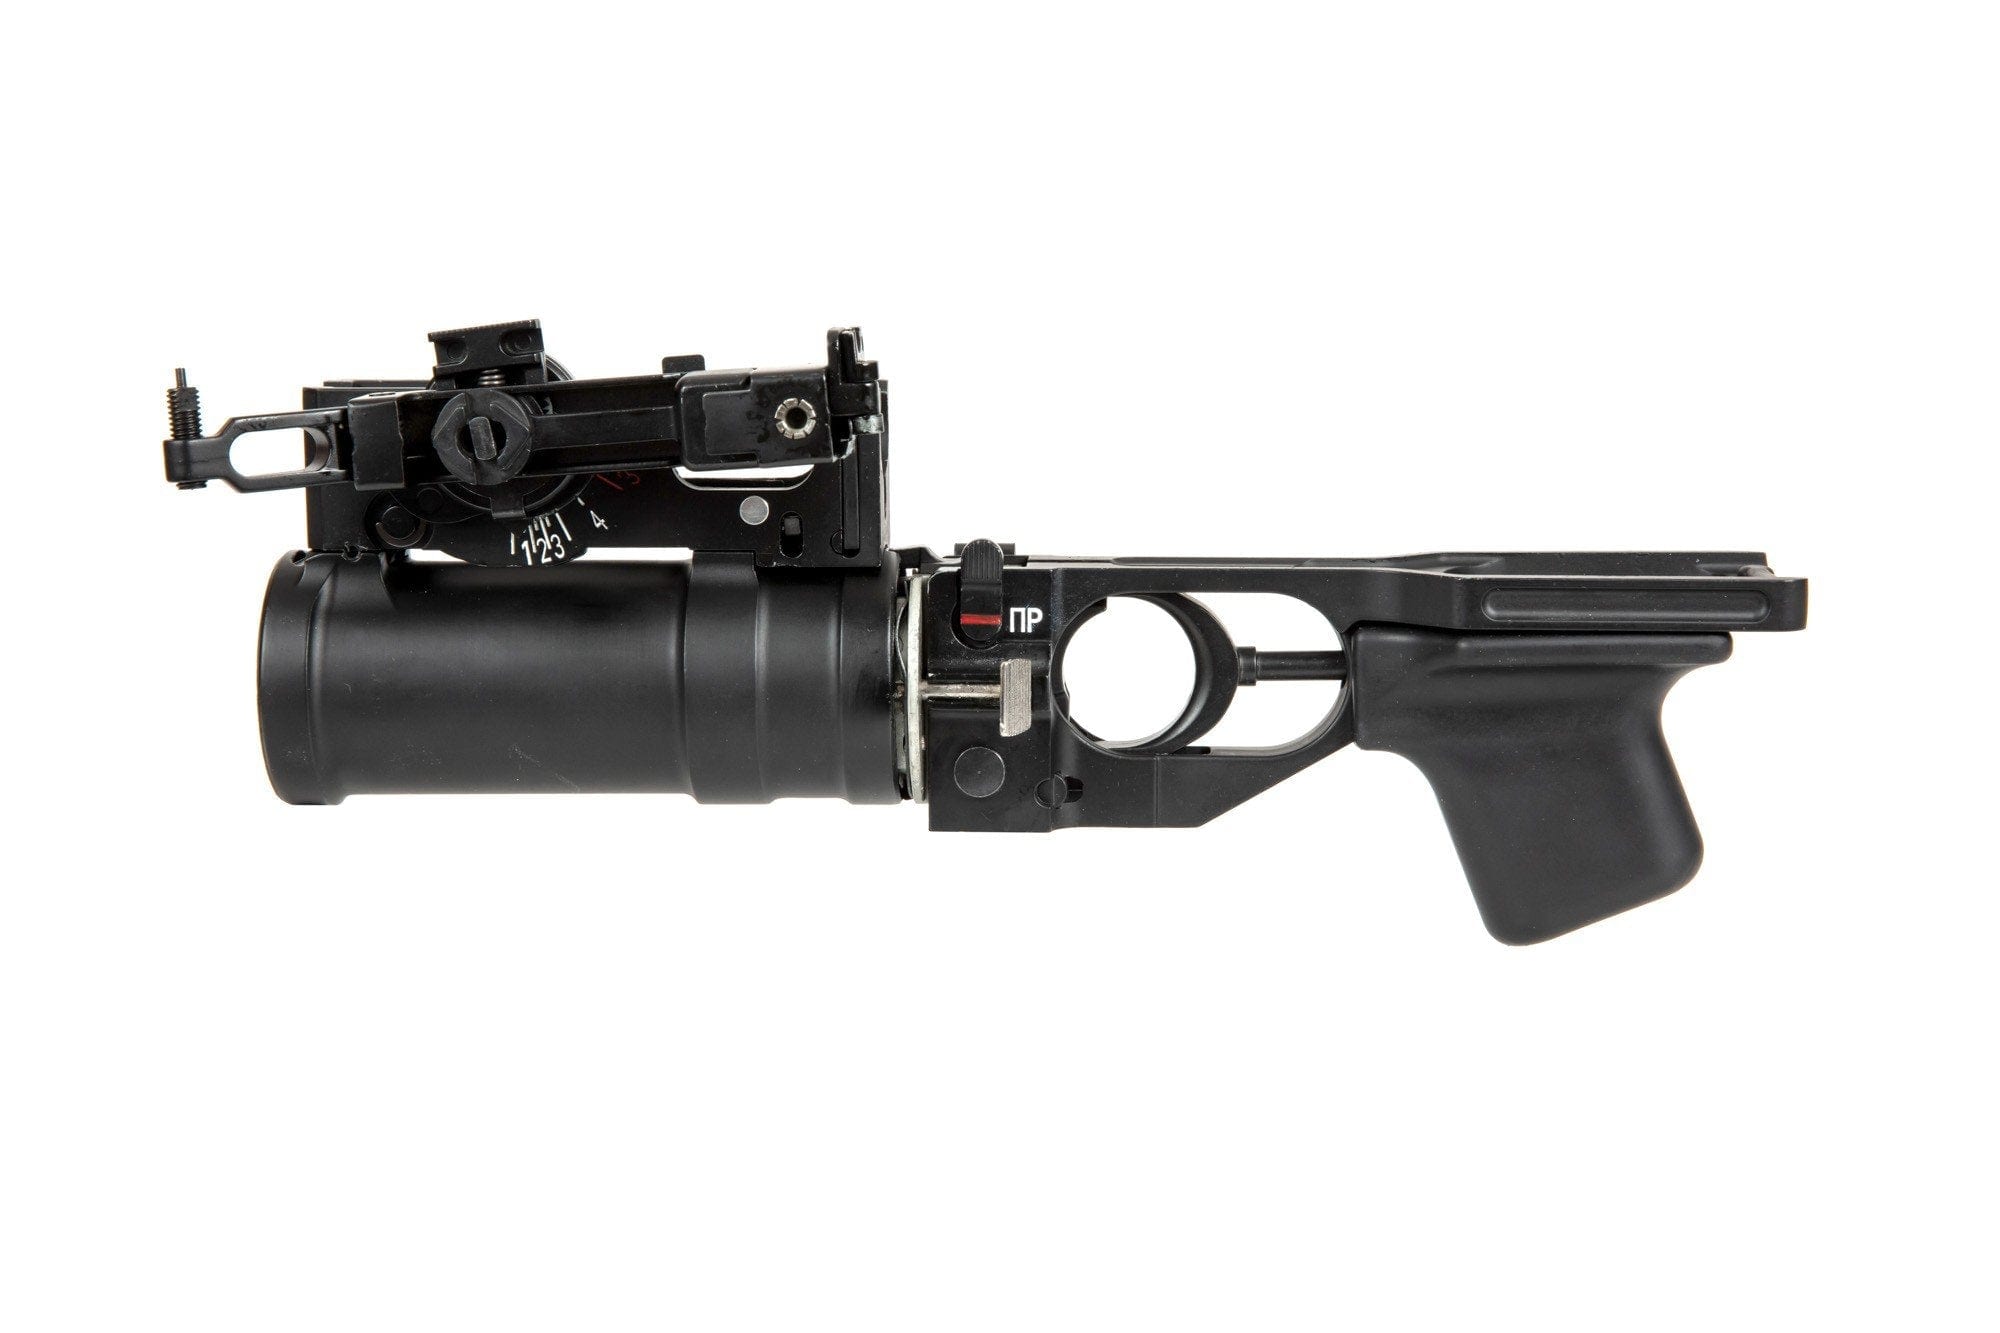 GP-25 Grenade Launcher Replica for AK Replicas